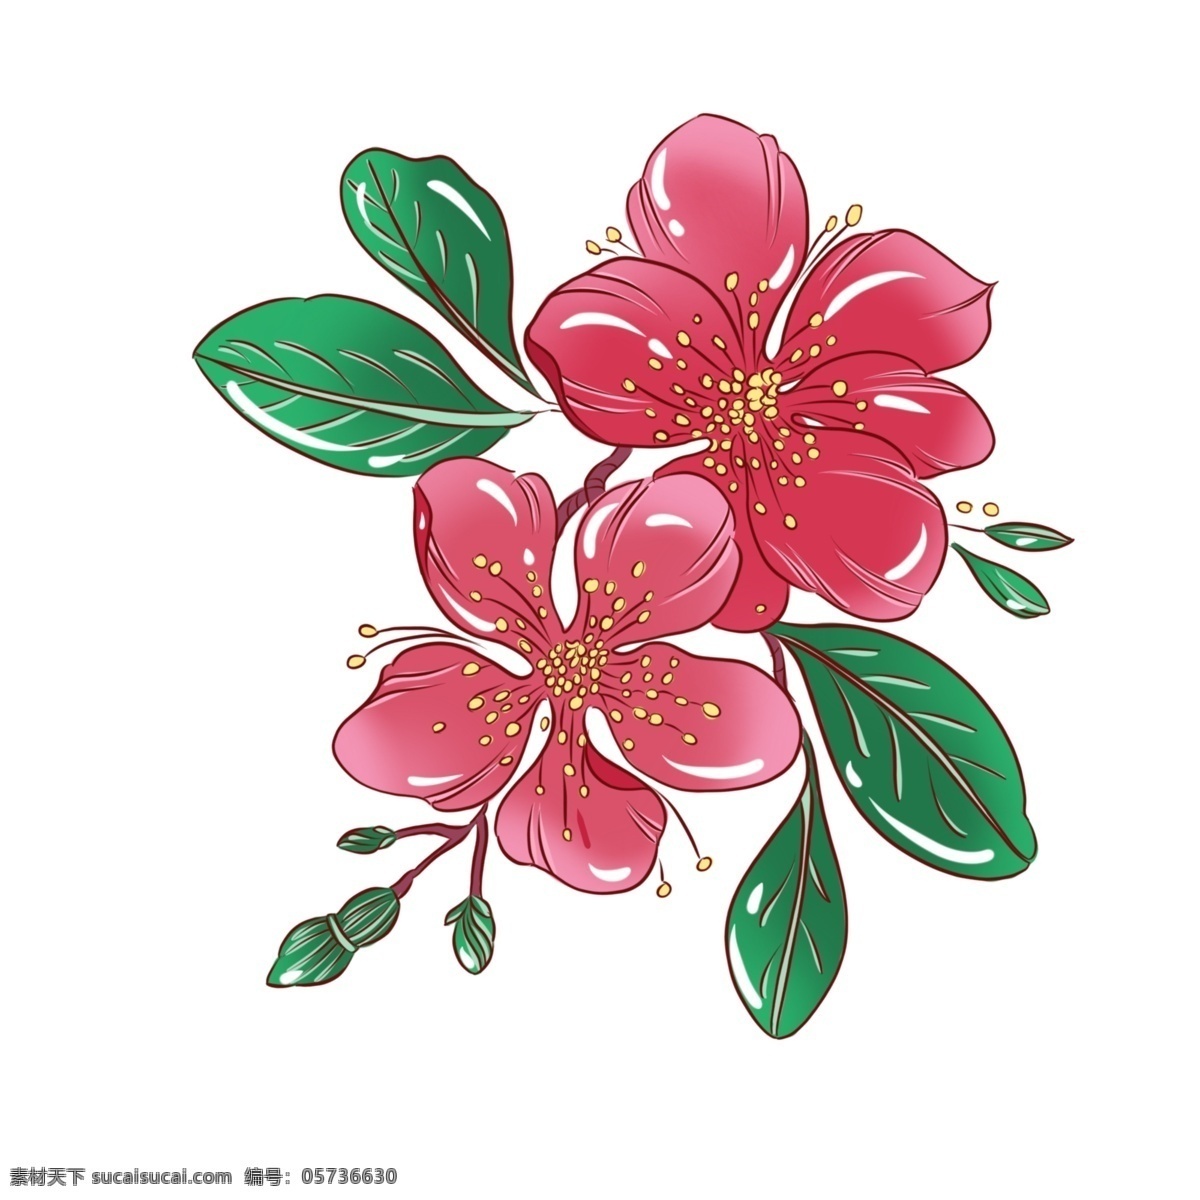 手绘 植物 传统 花卉 手绘植物 手绘花卉 花朵 花叶 手绘花草 传统花卉 传统花草